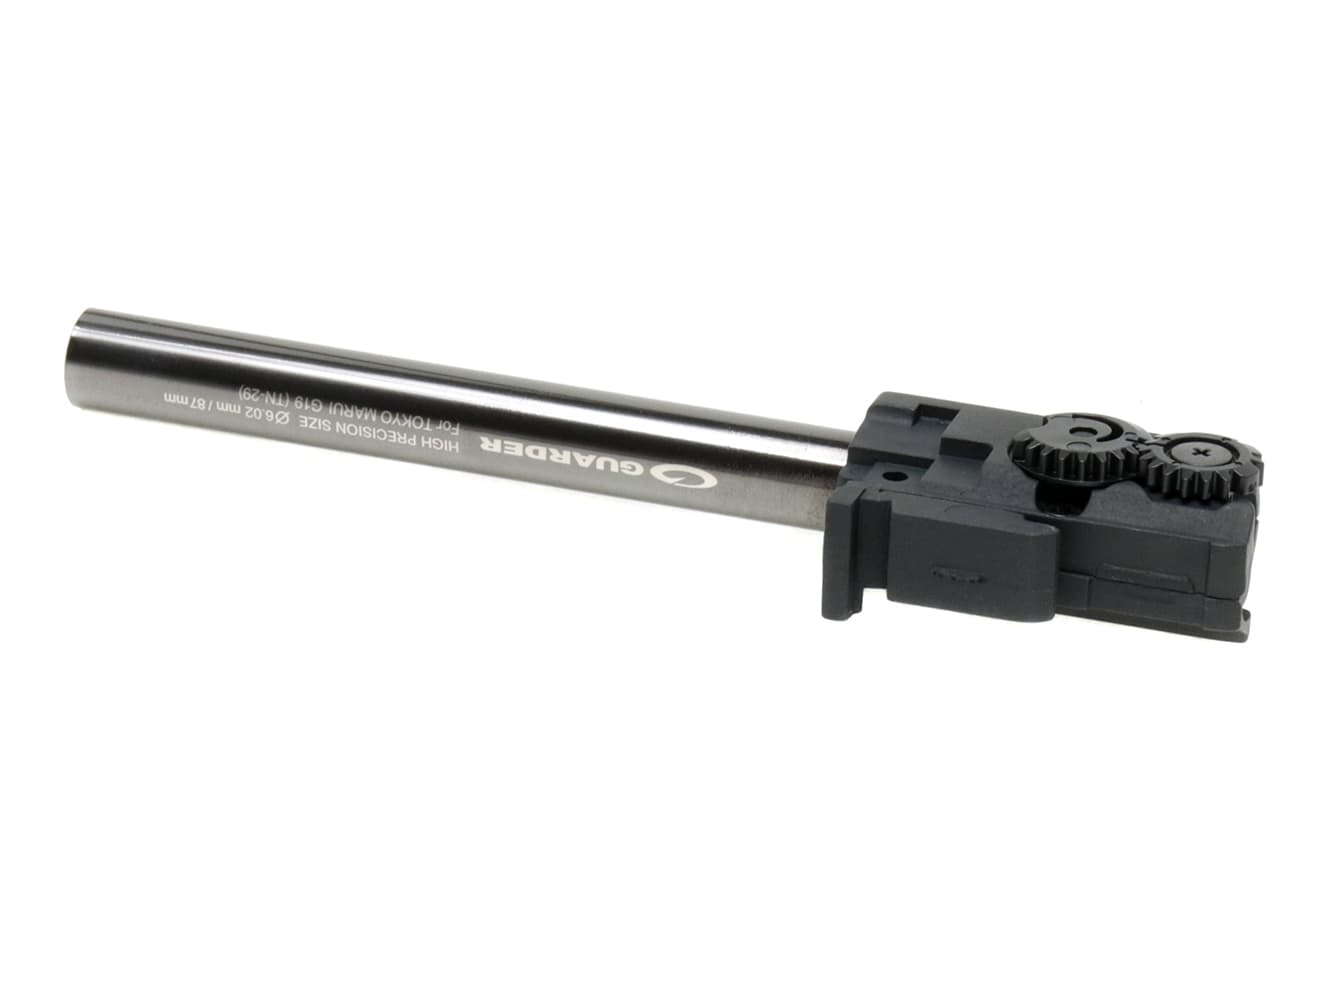 MP9-44　GUARDER 強化ホップアップチャンバー w/ 6.02 TNバレル マルイ GBB M&P9用